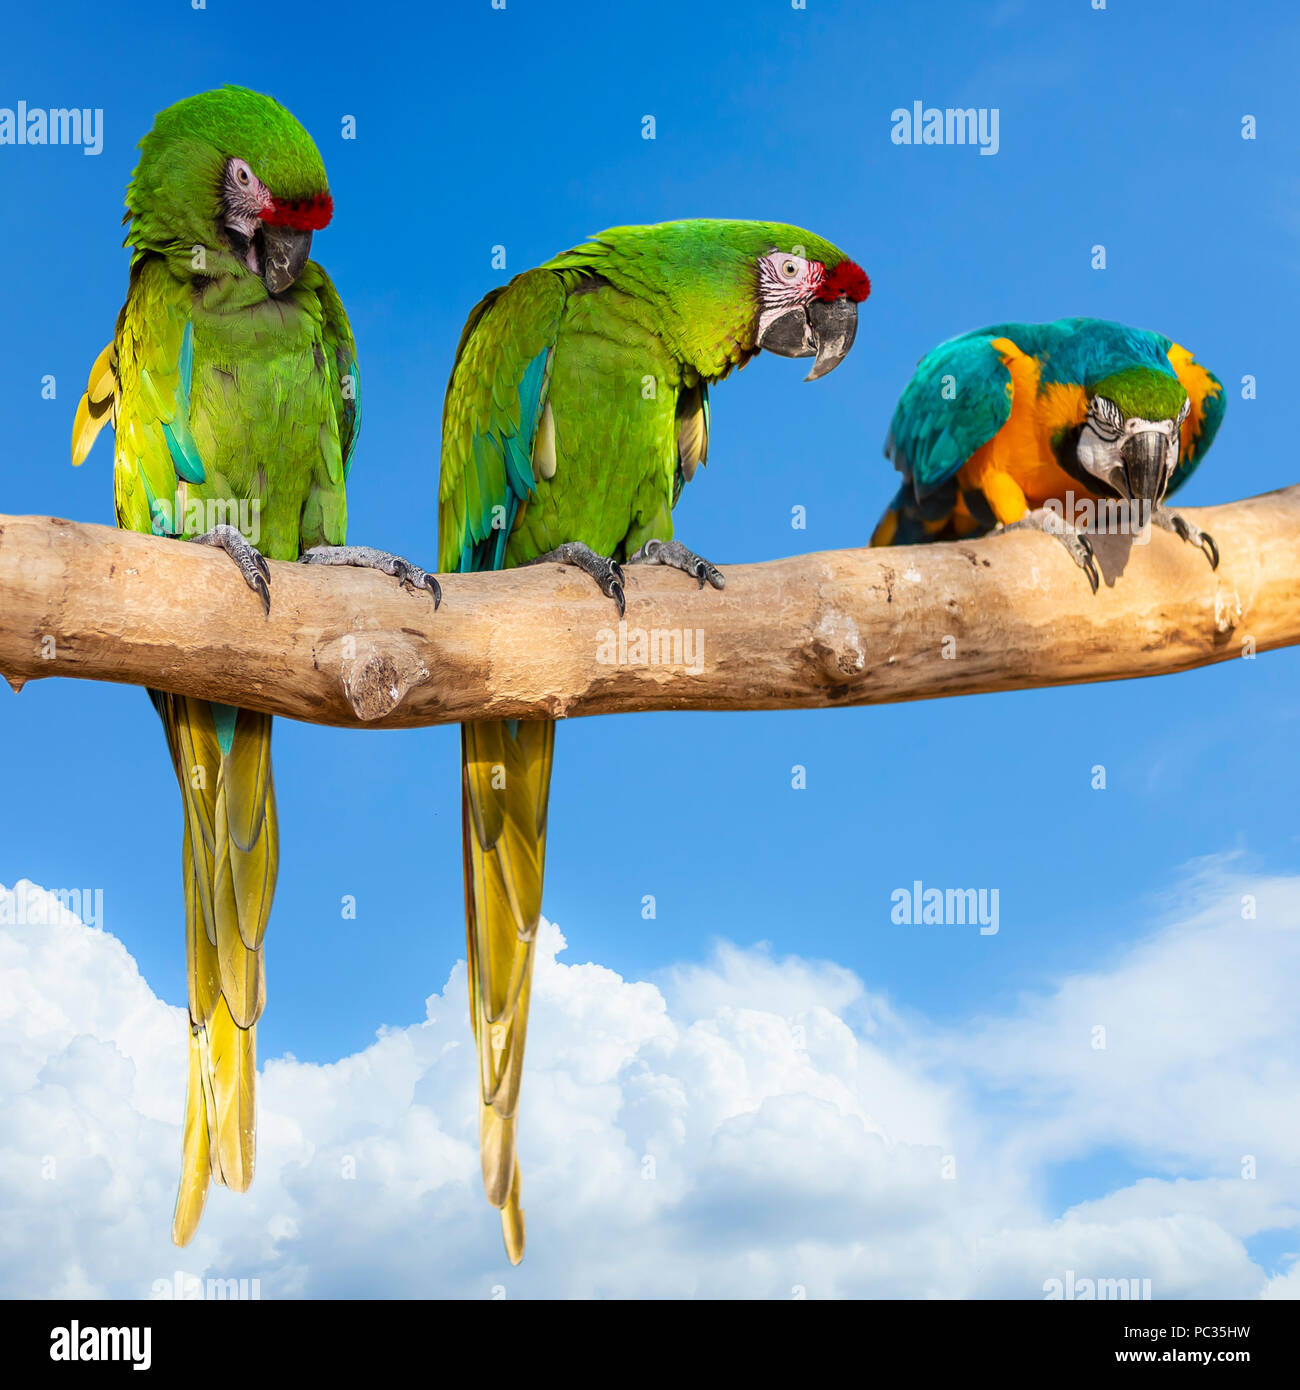 Papageien - Ara ararauna auf Baum und blauer Himmel - Luftfahrt tropischen Urlaub Konzept. square Foto Stockfoto